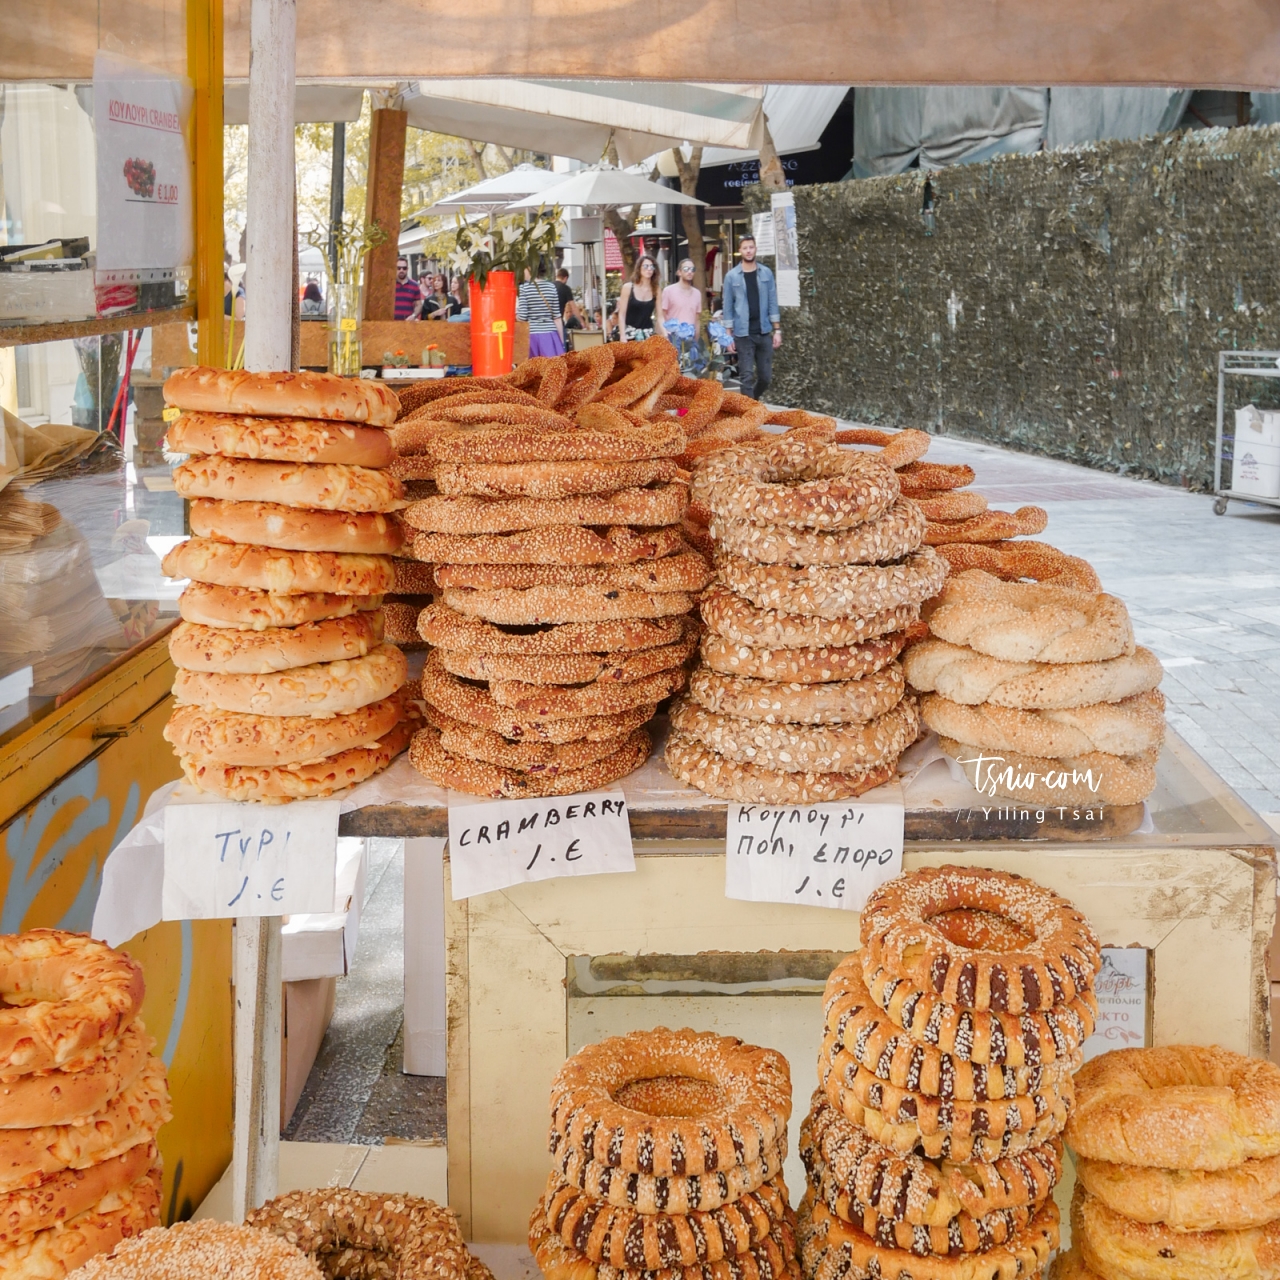 希臘傳統美食 Koulouri 希臘芝麻餅甜甜圈 雅典街頭小吃